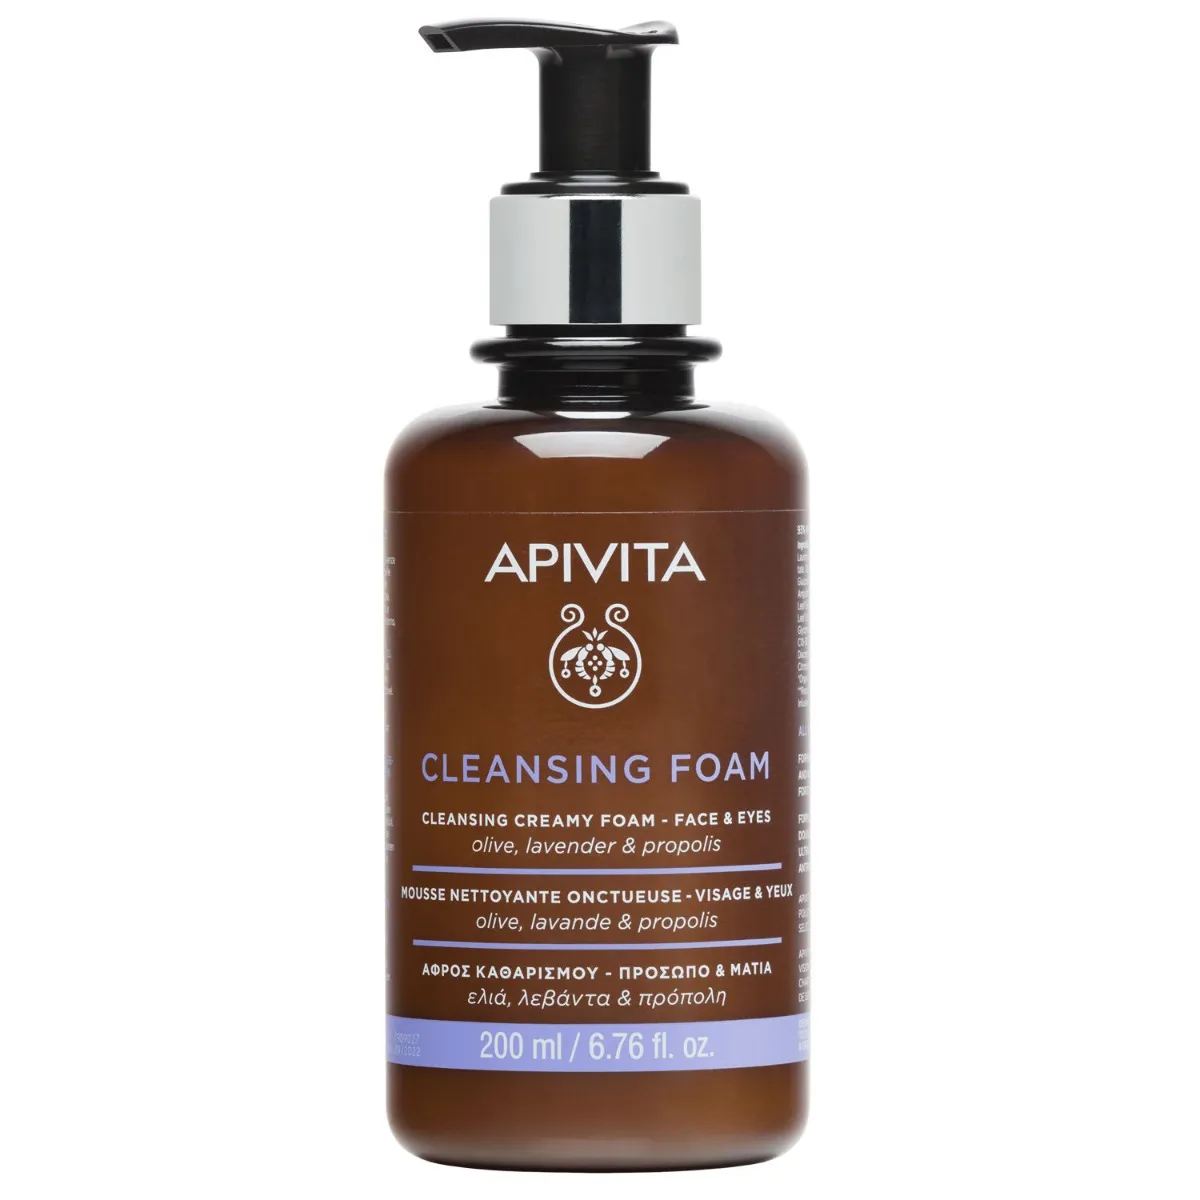 APIVITA Cleansing Foam